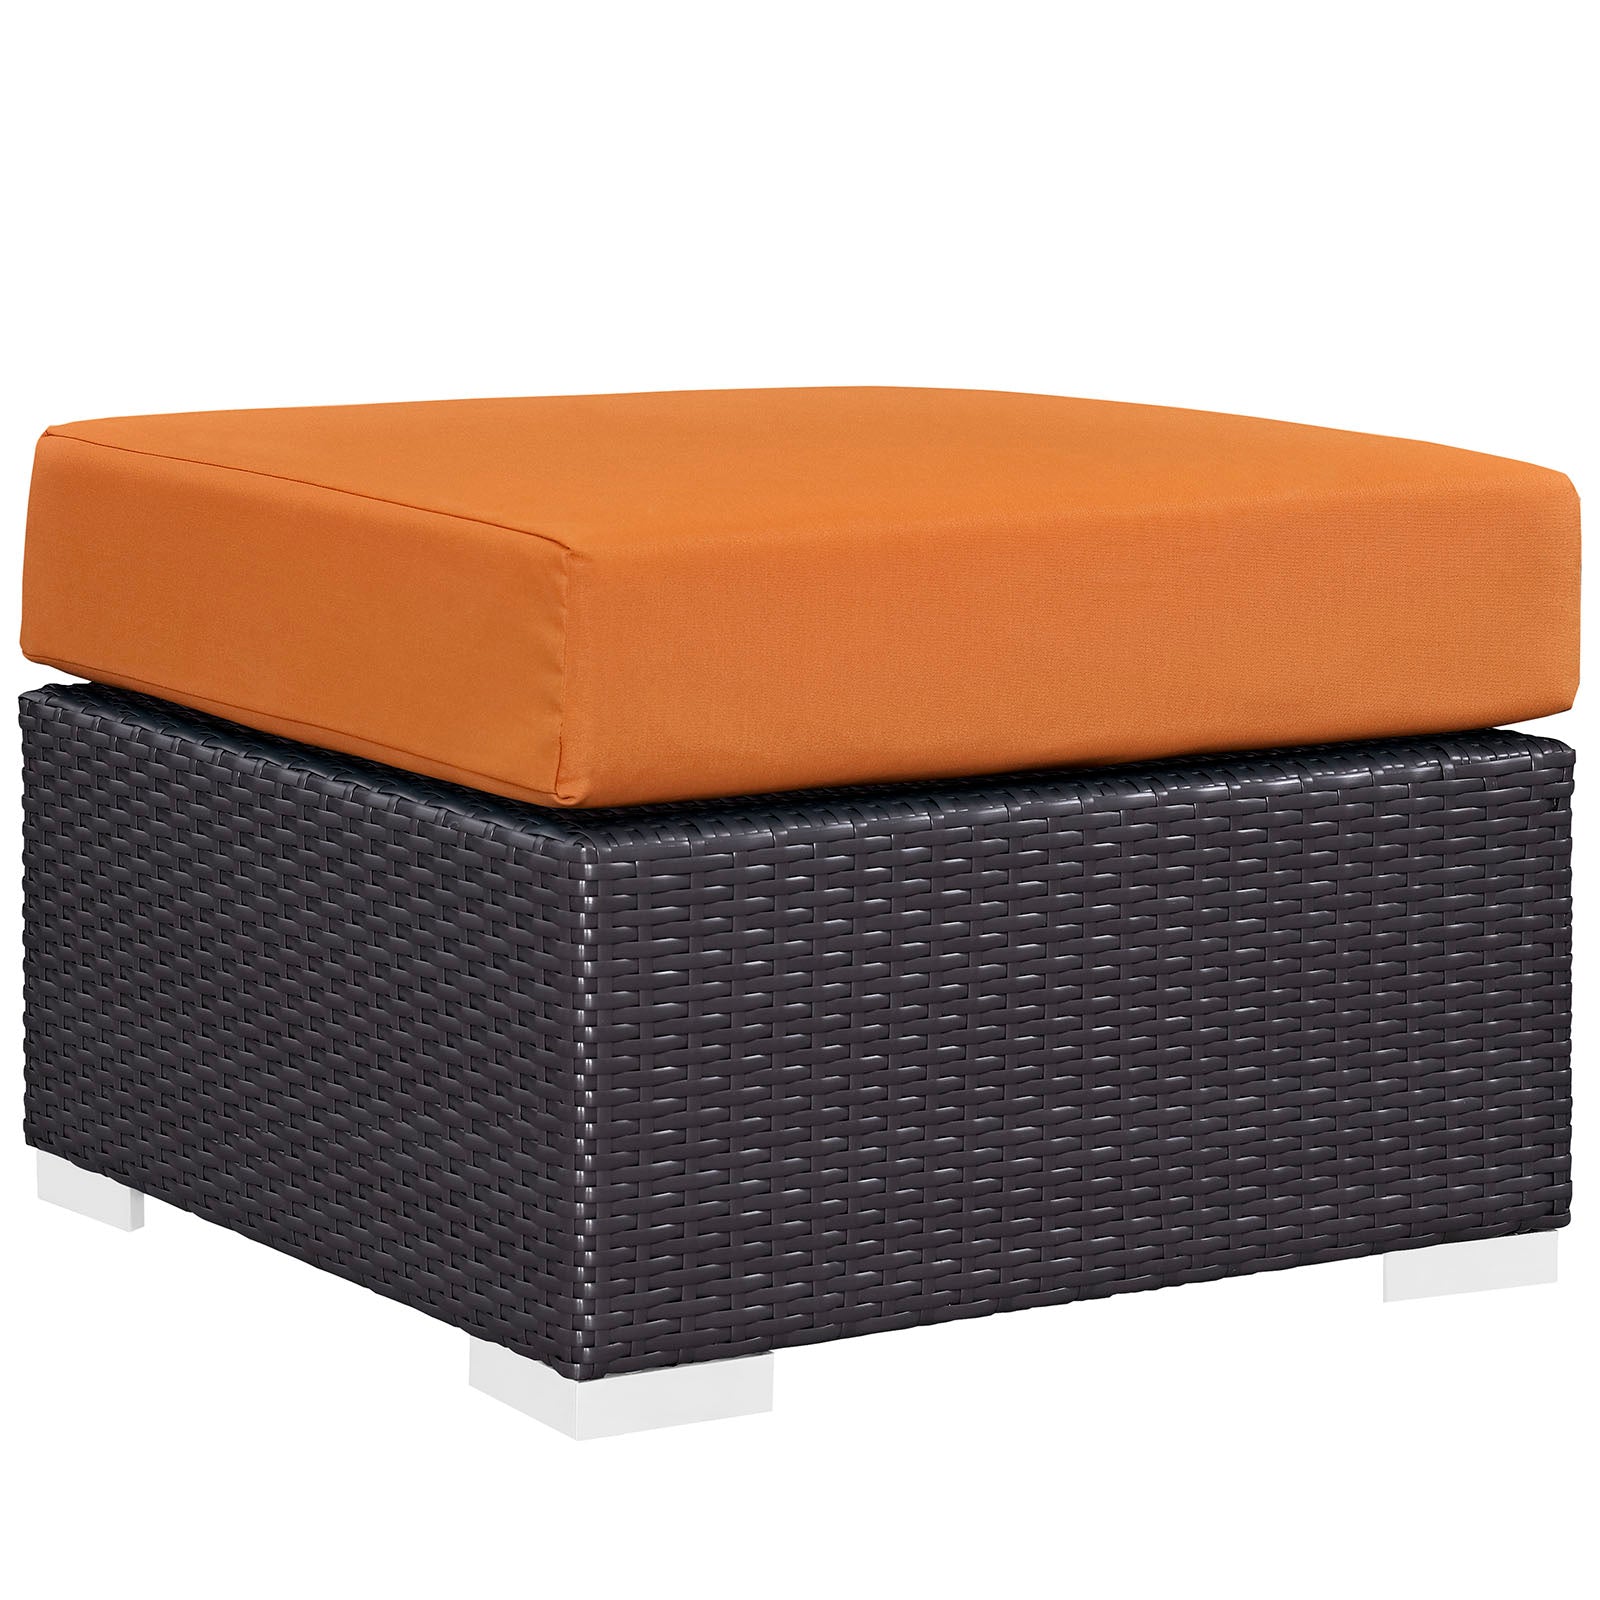 Modway Outdoor Conversation Sets - Convene 5 Piece Outdoor 130.5"W Patio Sofa Set Espresso Orange